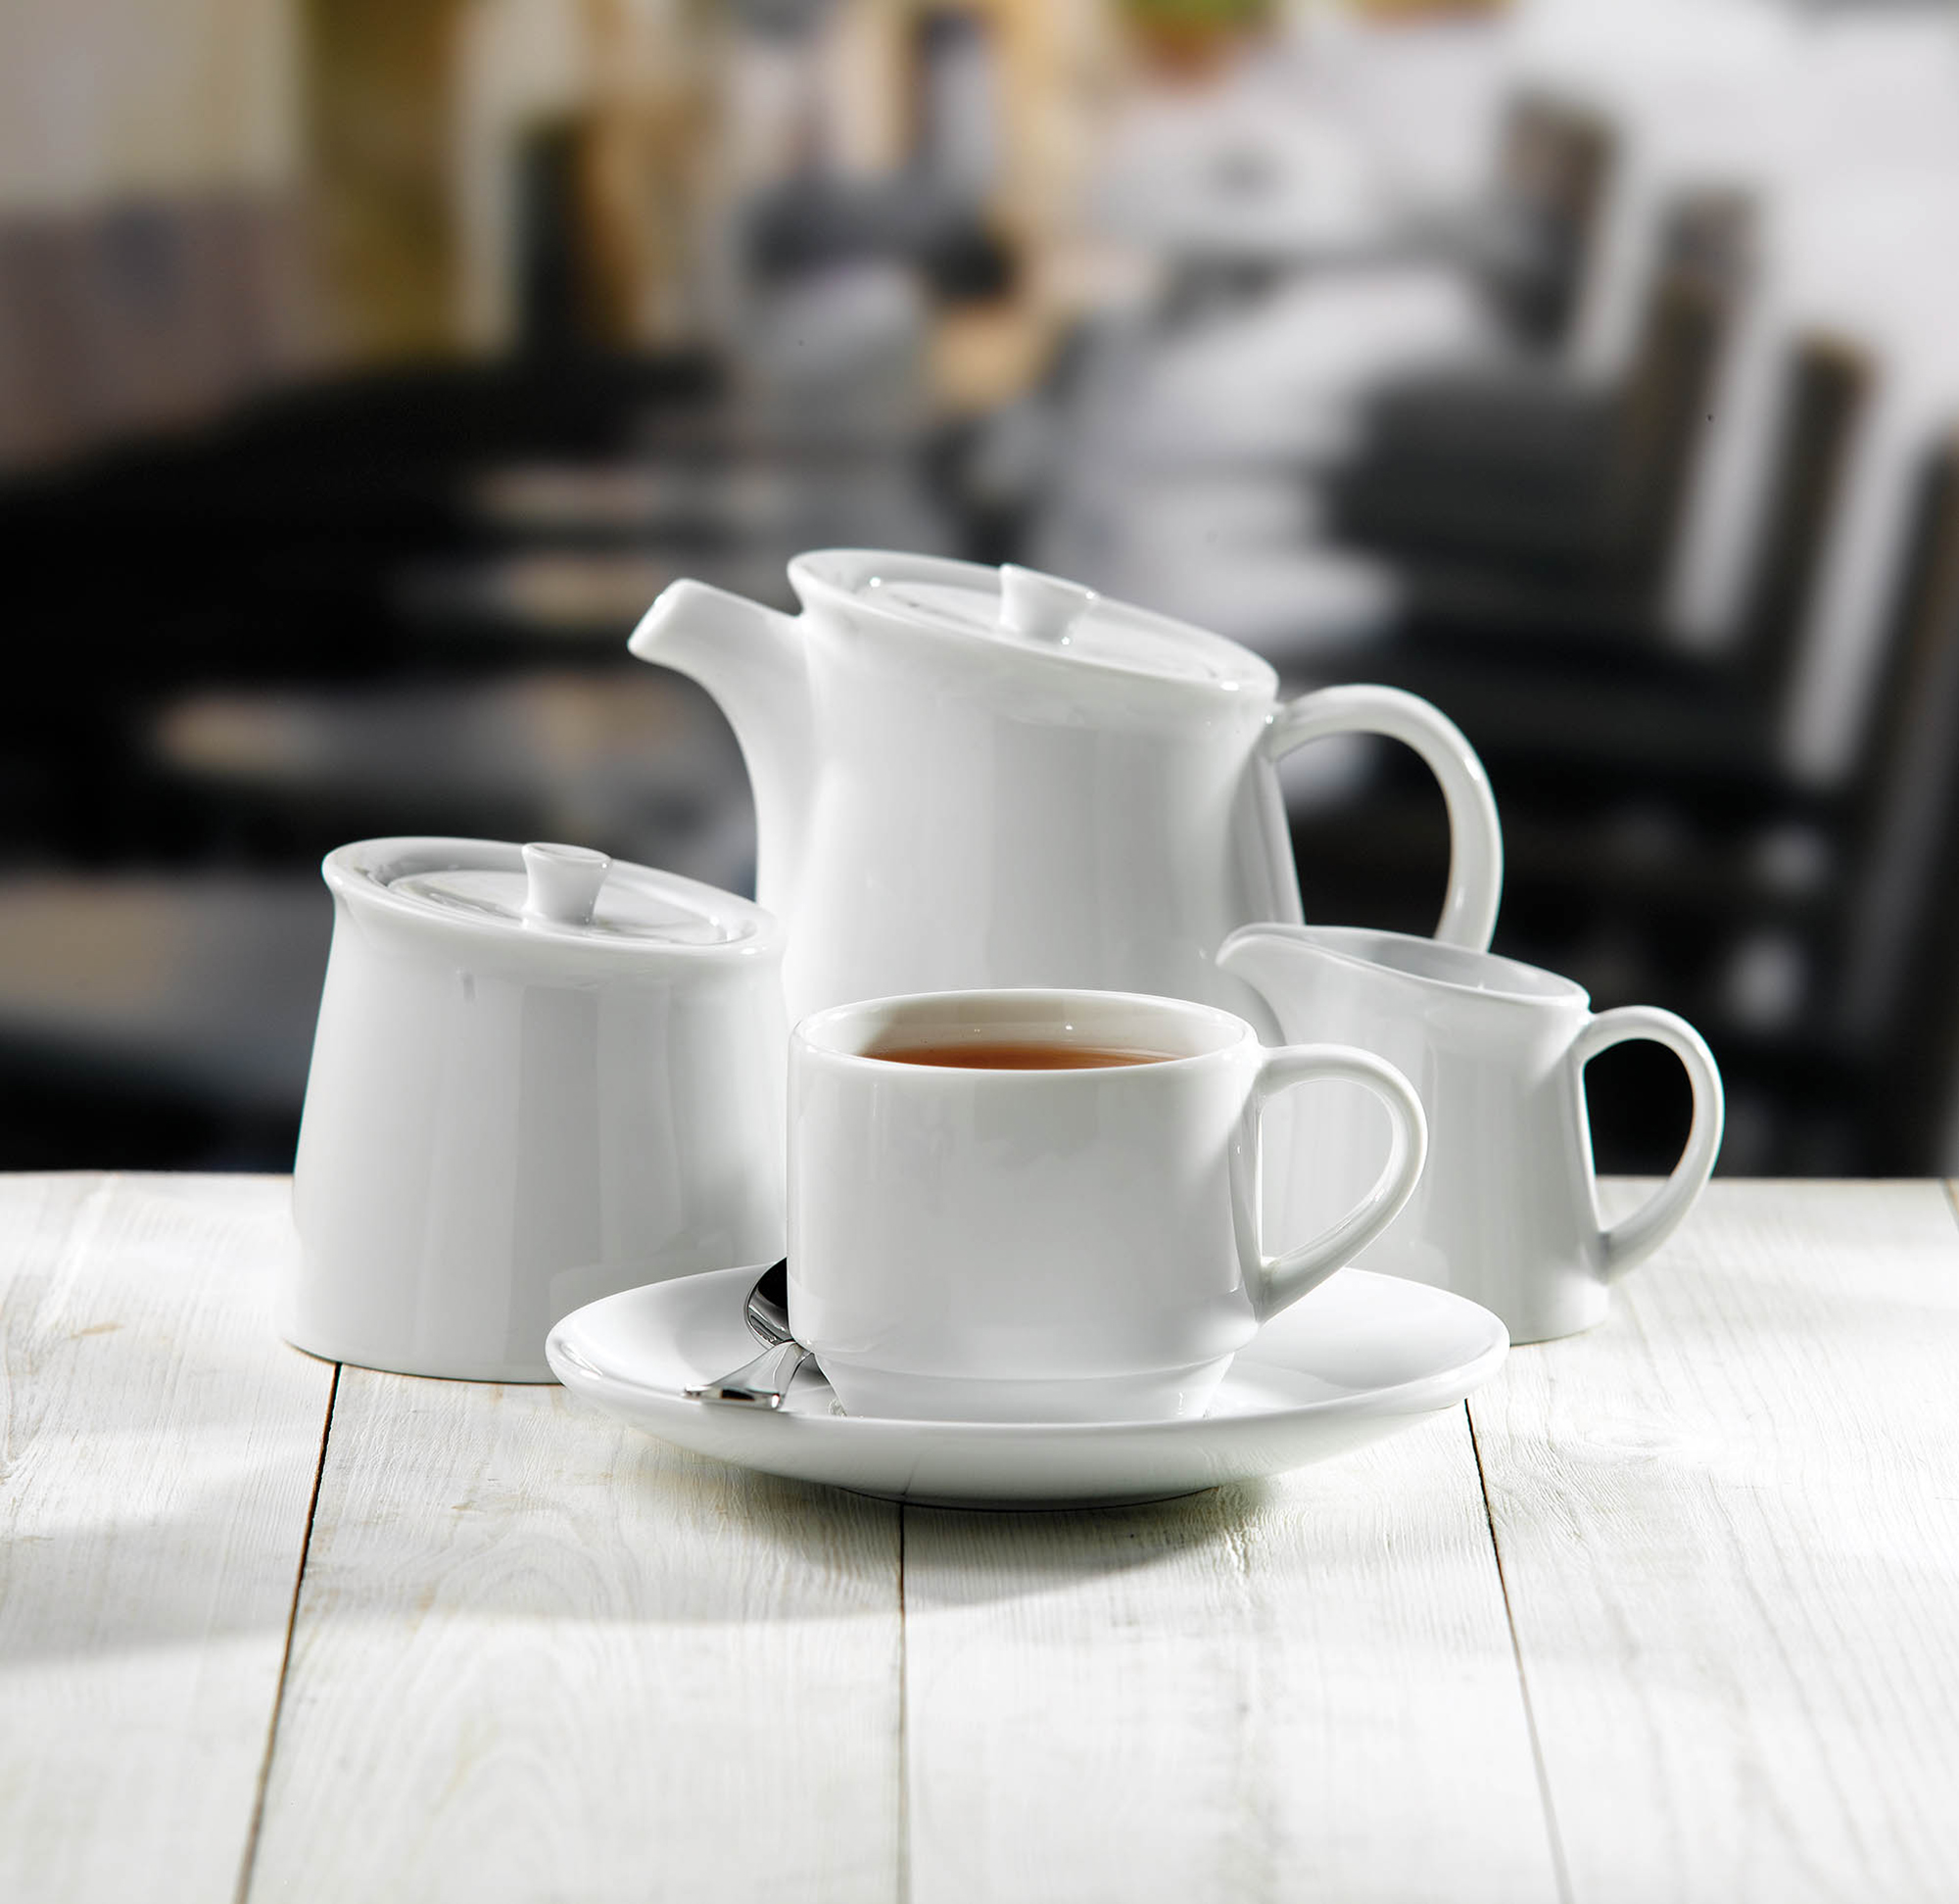 Churchill Art De Cuisine Menu Beverage Porzellan Kaffee-/Teetasse stapelbar 23Cl, 6 Stück, weiß, rund